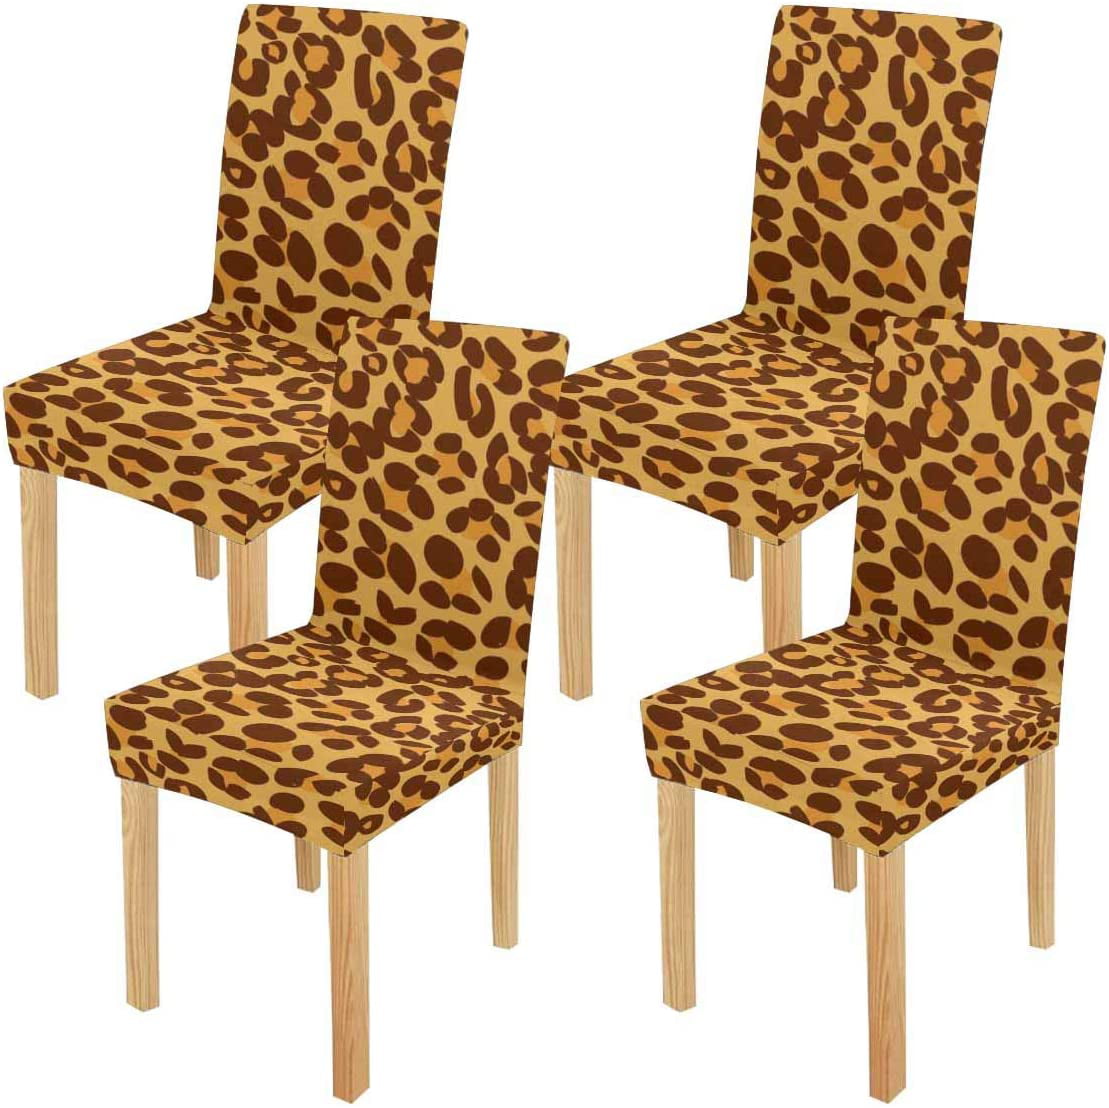 Fmshpon Leopard Print Design Stretch, Leopard Print Parson Chair Covers